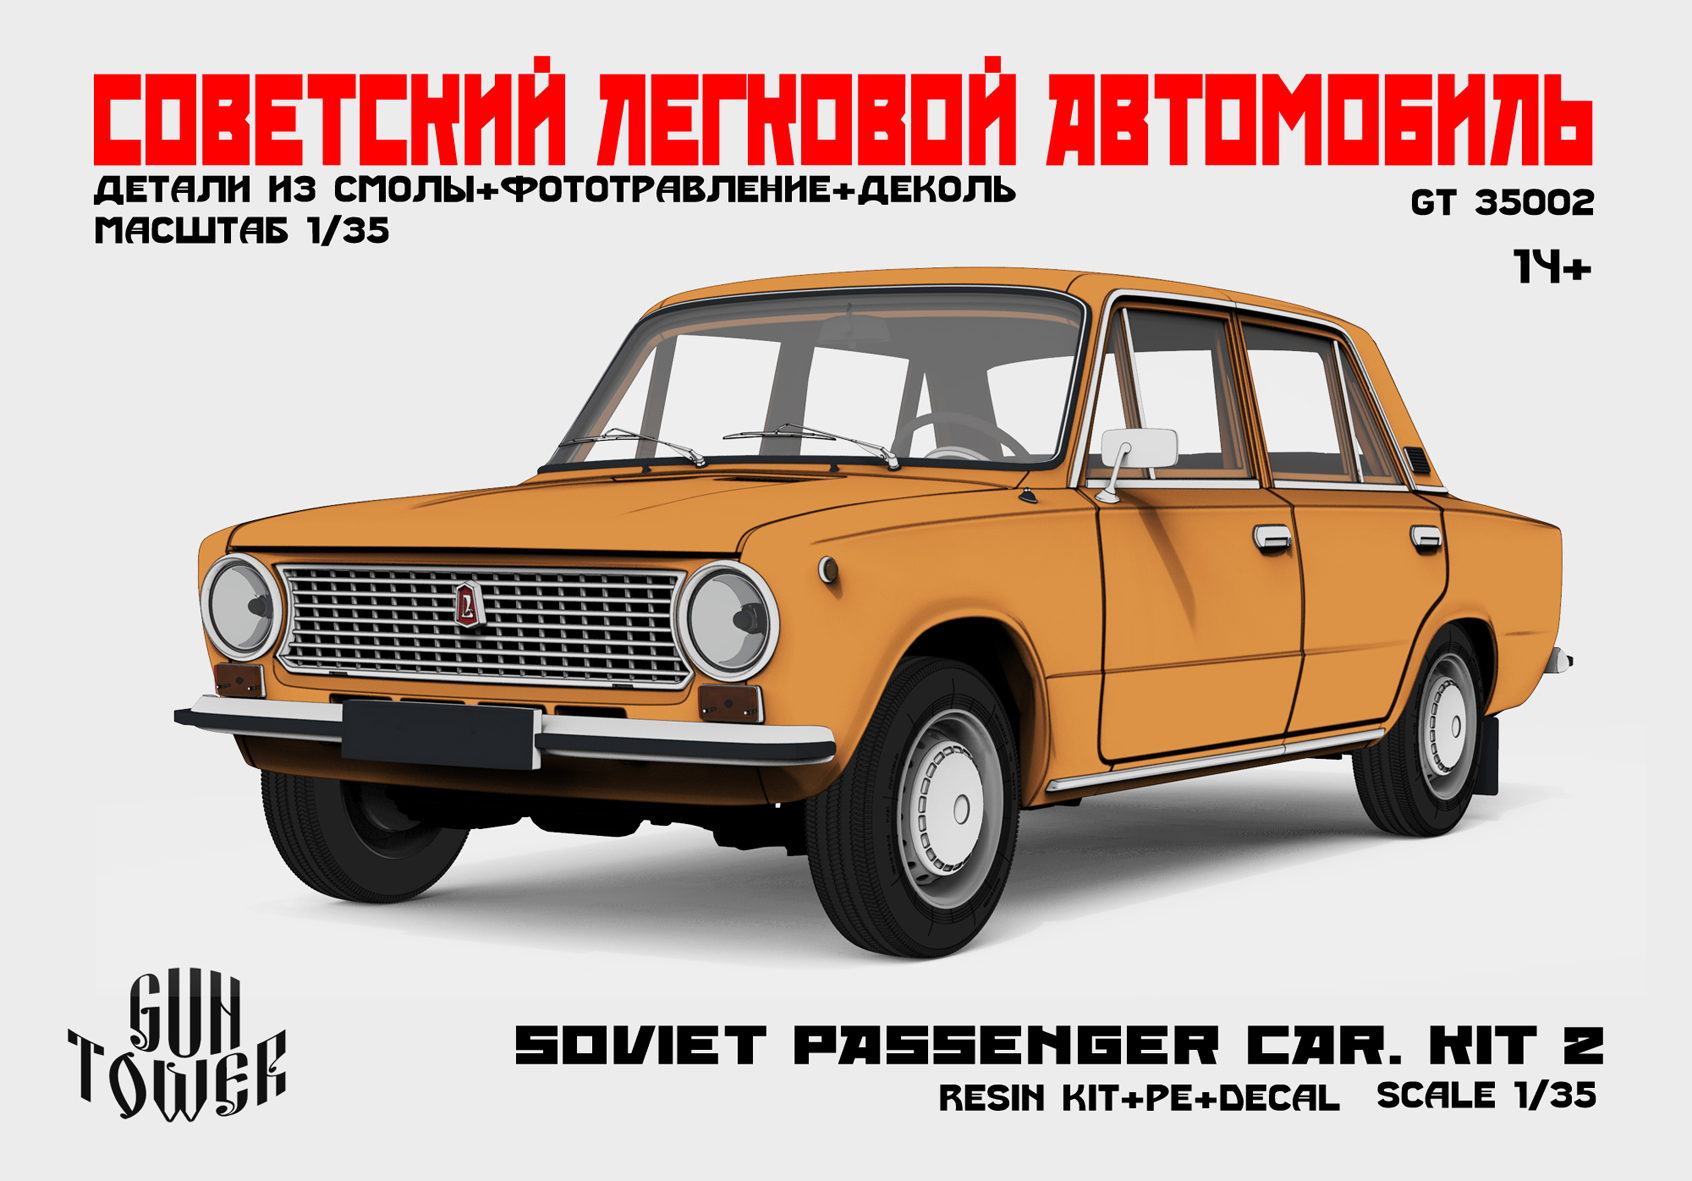 Soviet passenger car.Kit 2 (21011)